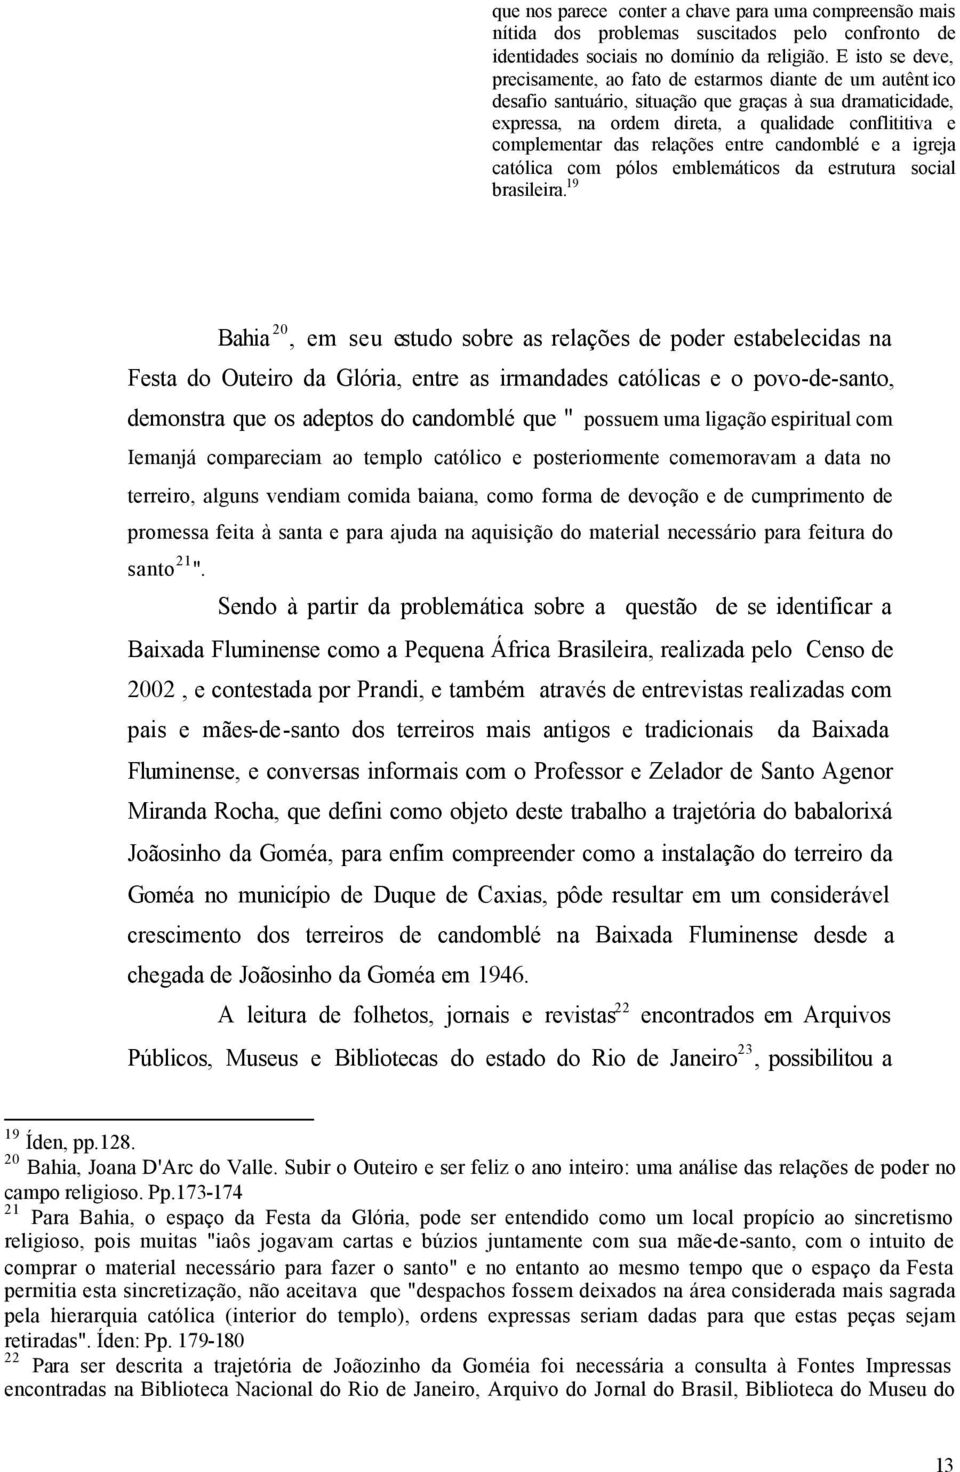 complementar das relações entre candomblé e a igreja católica com pólos emblemáticos da estrutura social brasileira.